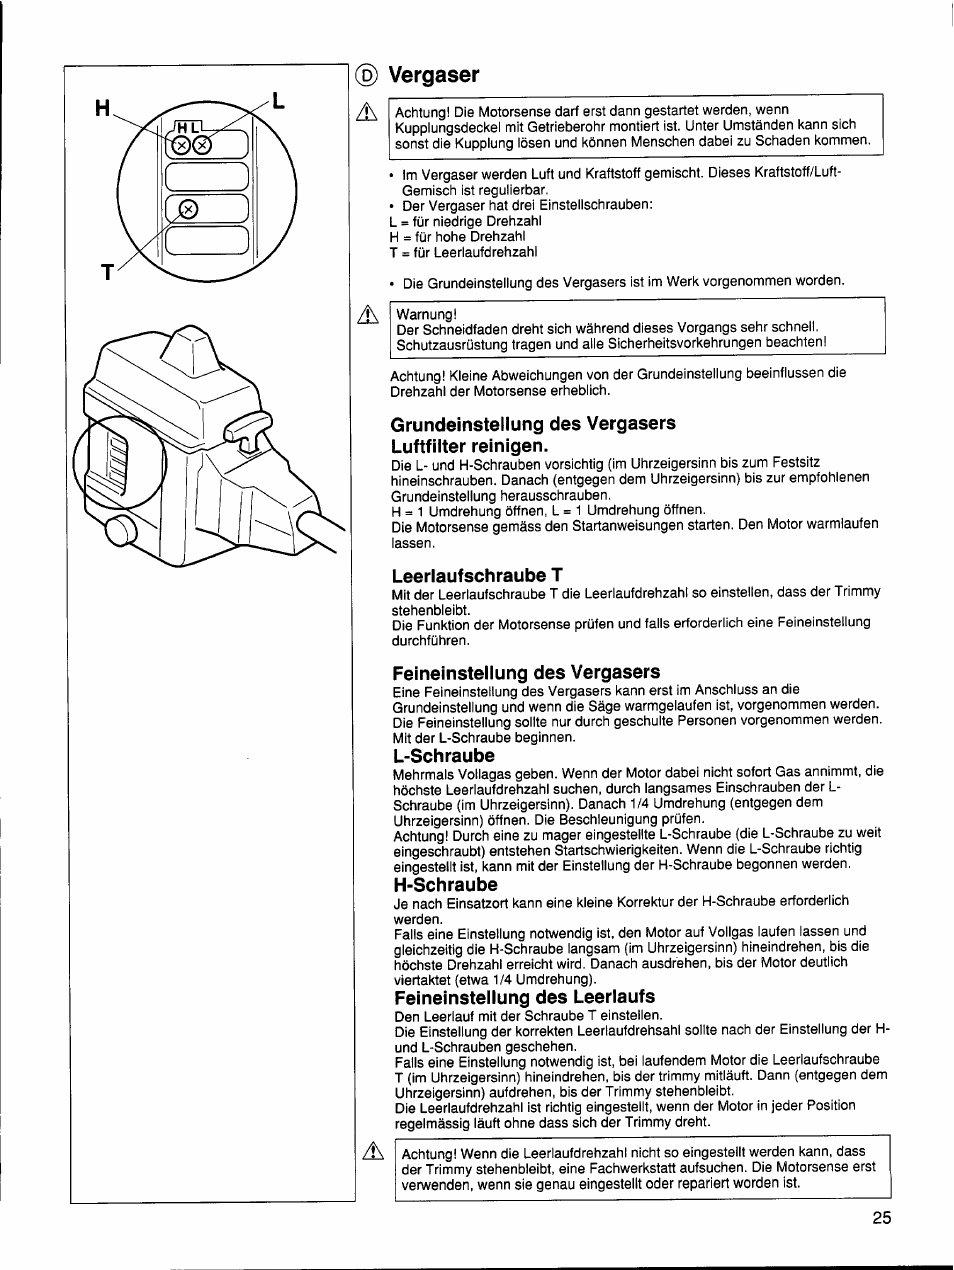 Grundeinstellung des vergasers luftfilter reinigen, Leerlaufschraube t,  Feineinstellung des vergasers | Husqvarna 26 R User Manual | Page 24 / 33